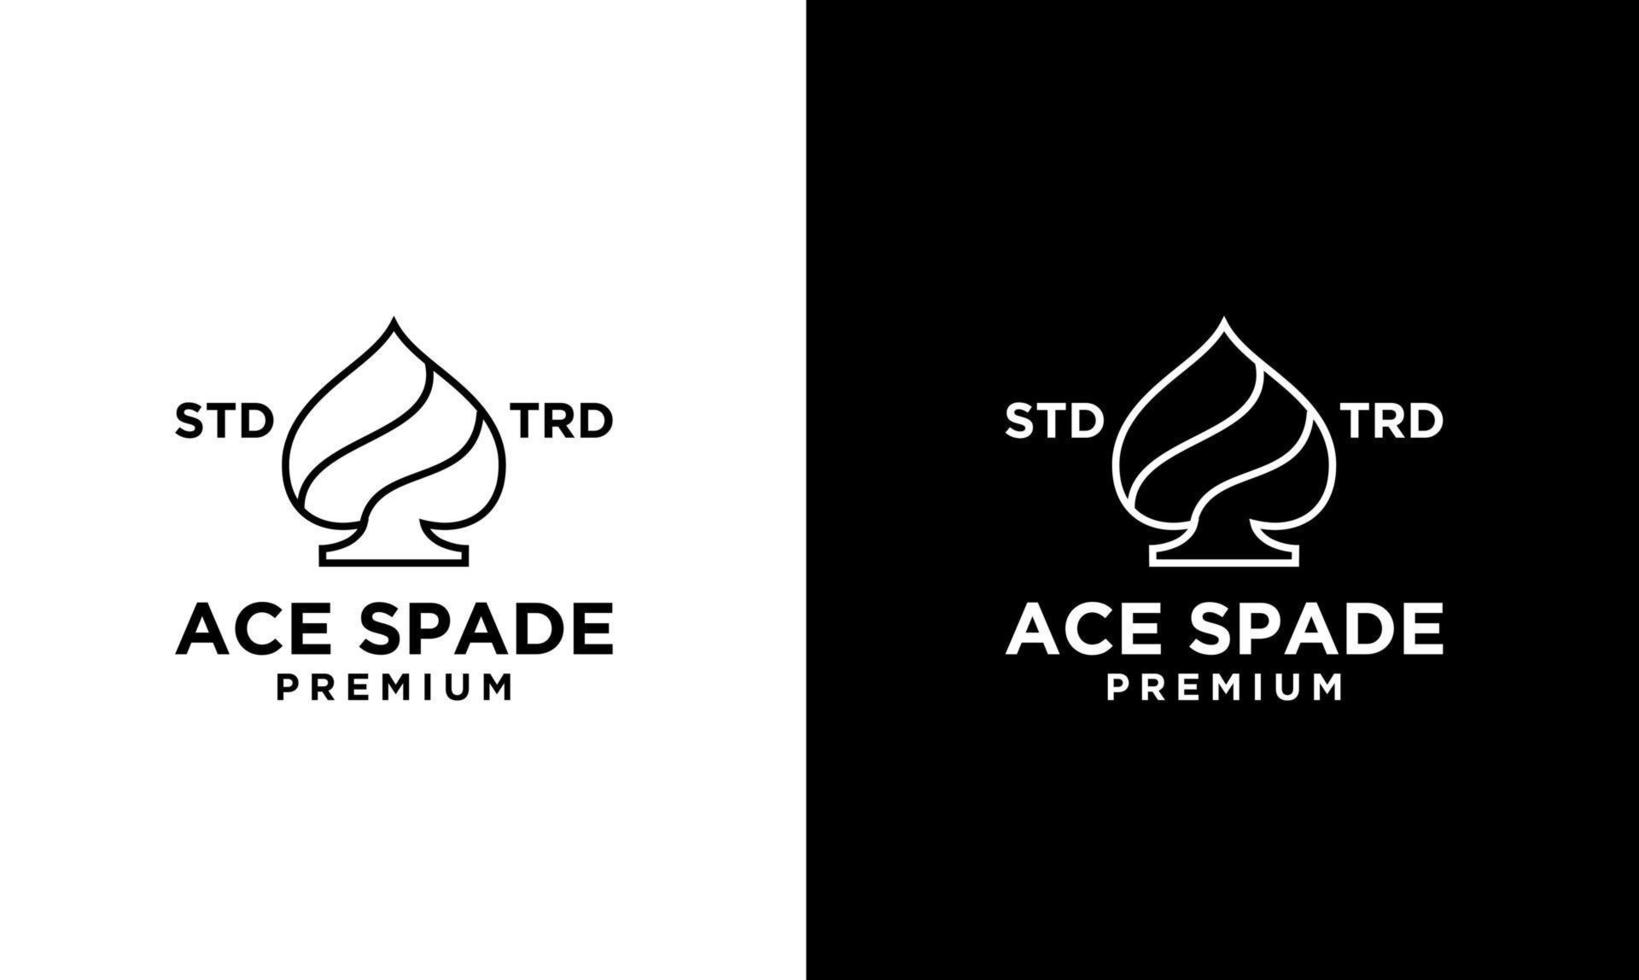 Ace spade Card Black vector logo design